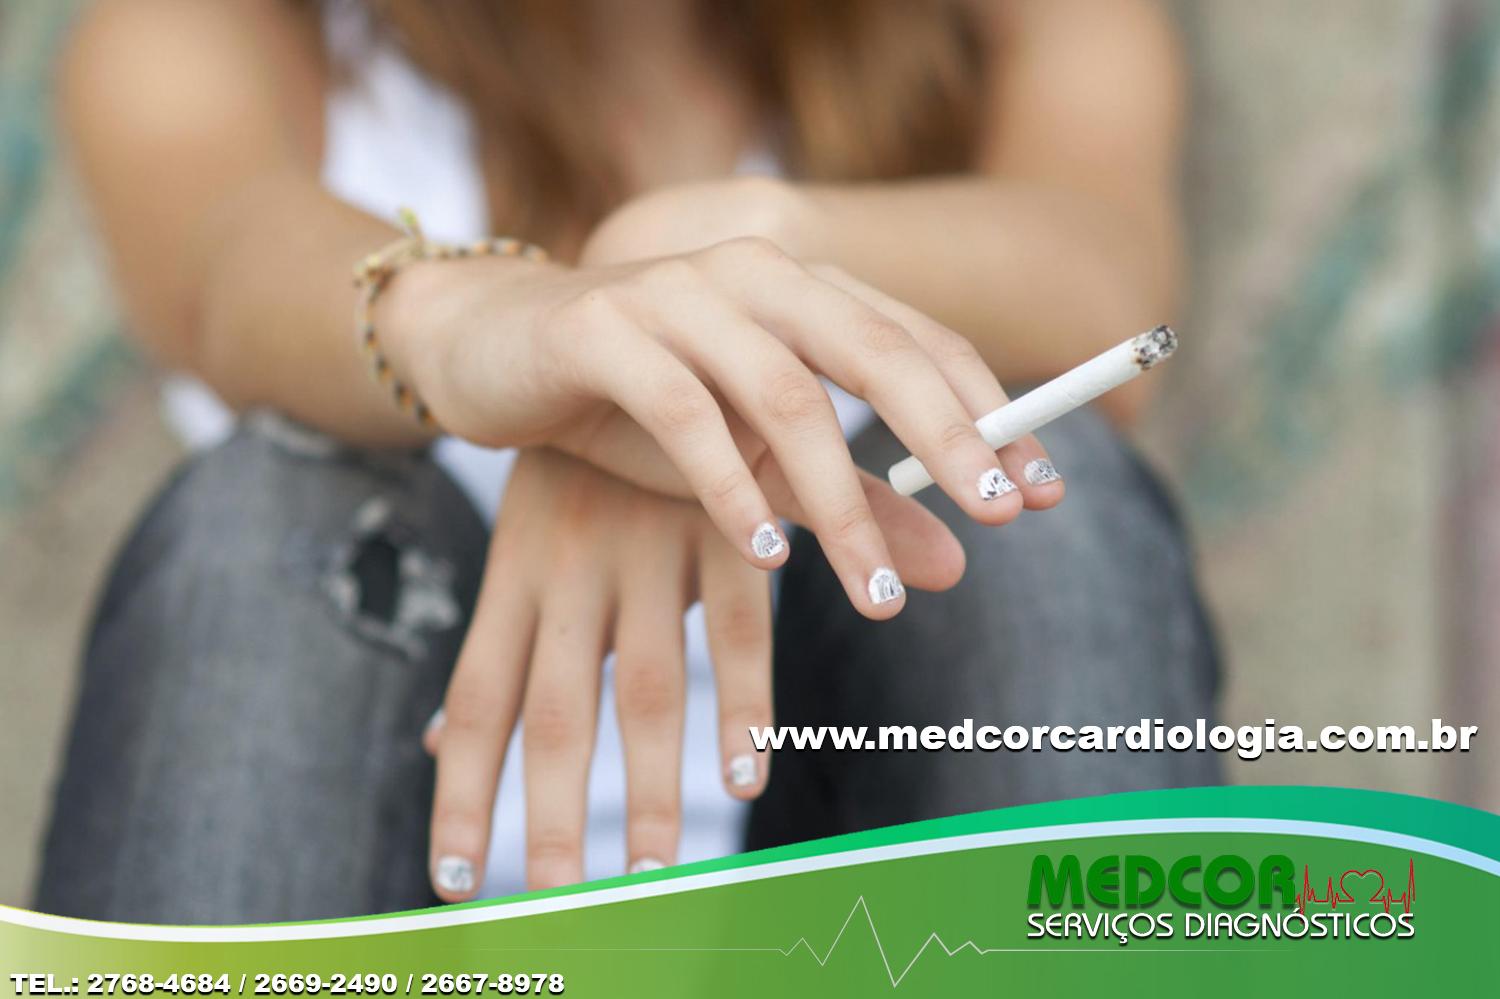 Antenados, jovens são mais suscetíveis a modismos do tabagismo